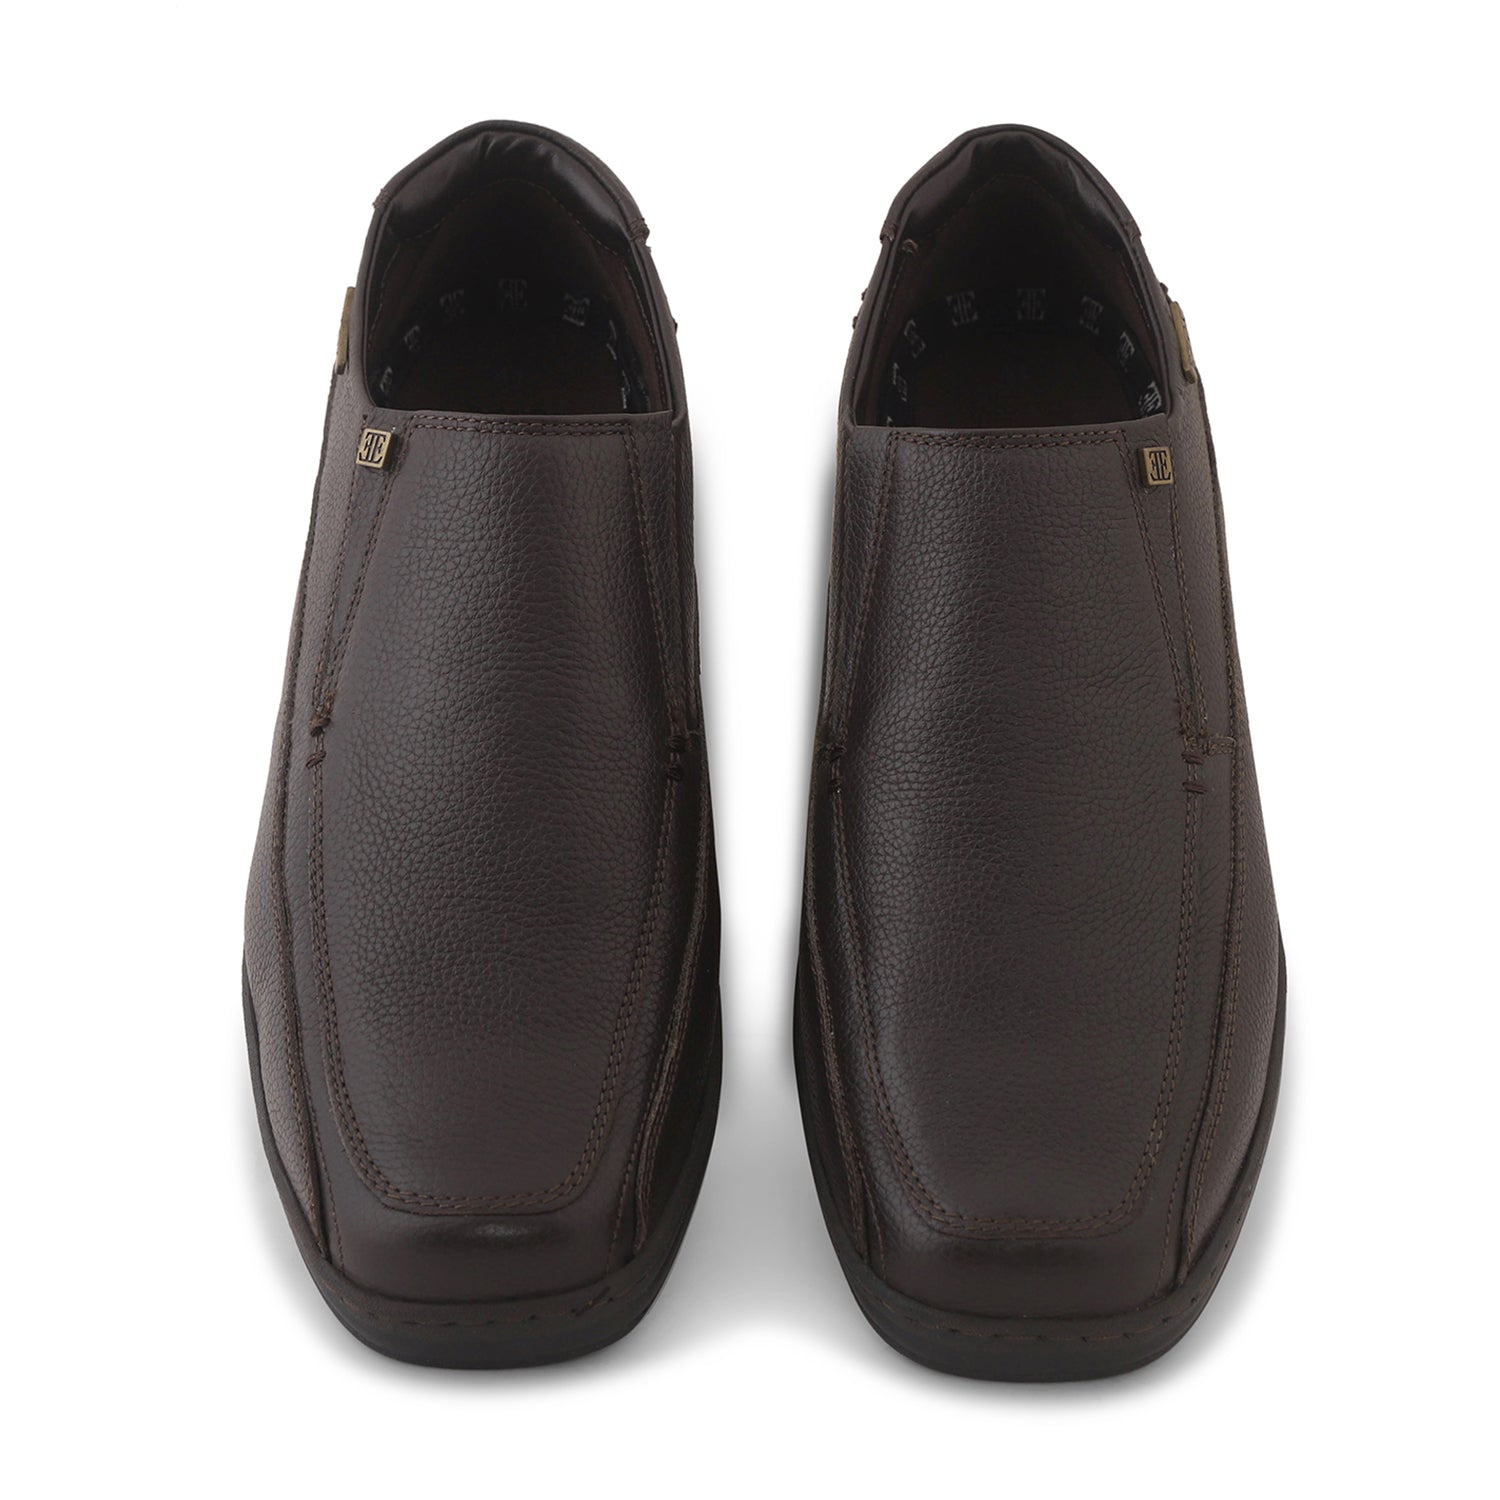 Ezok Brown Leather Slipon Shoes